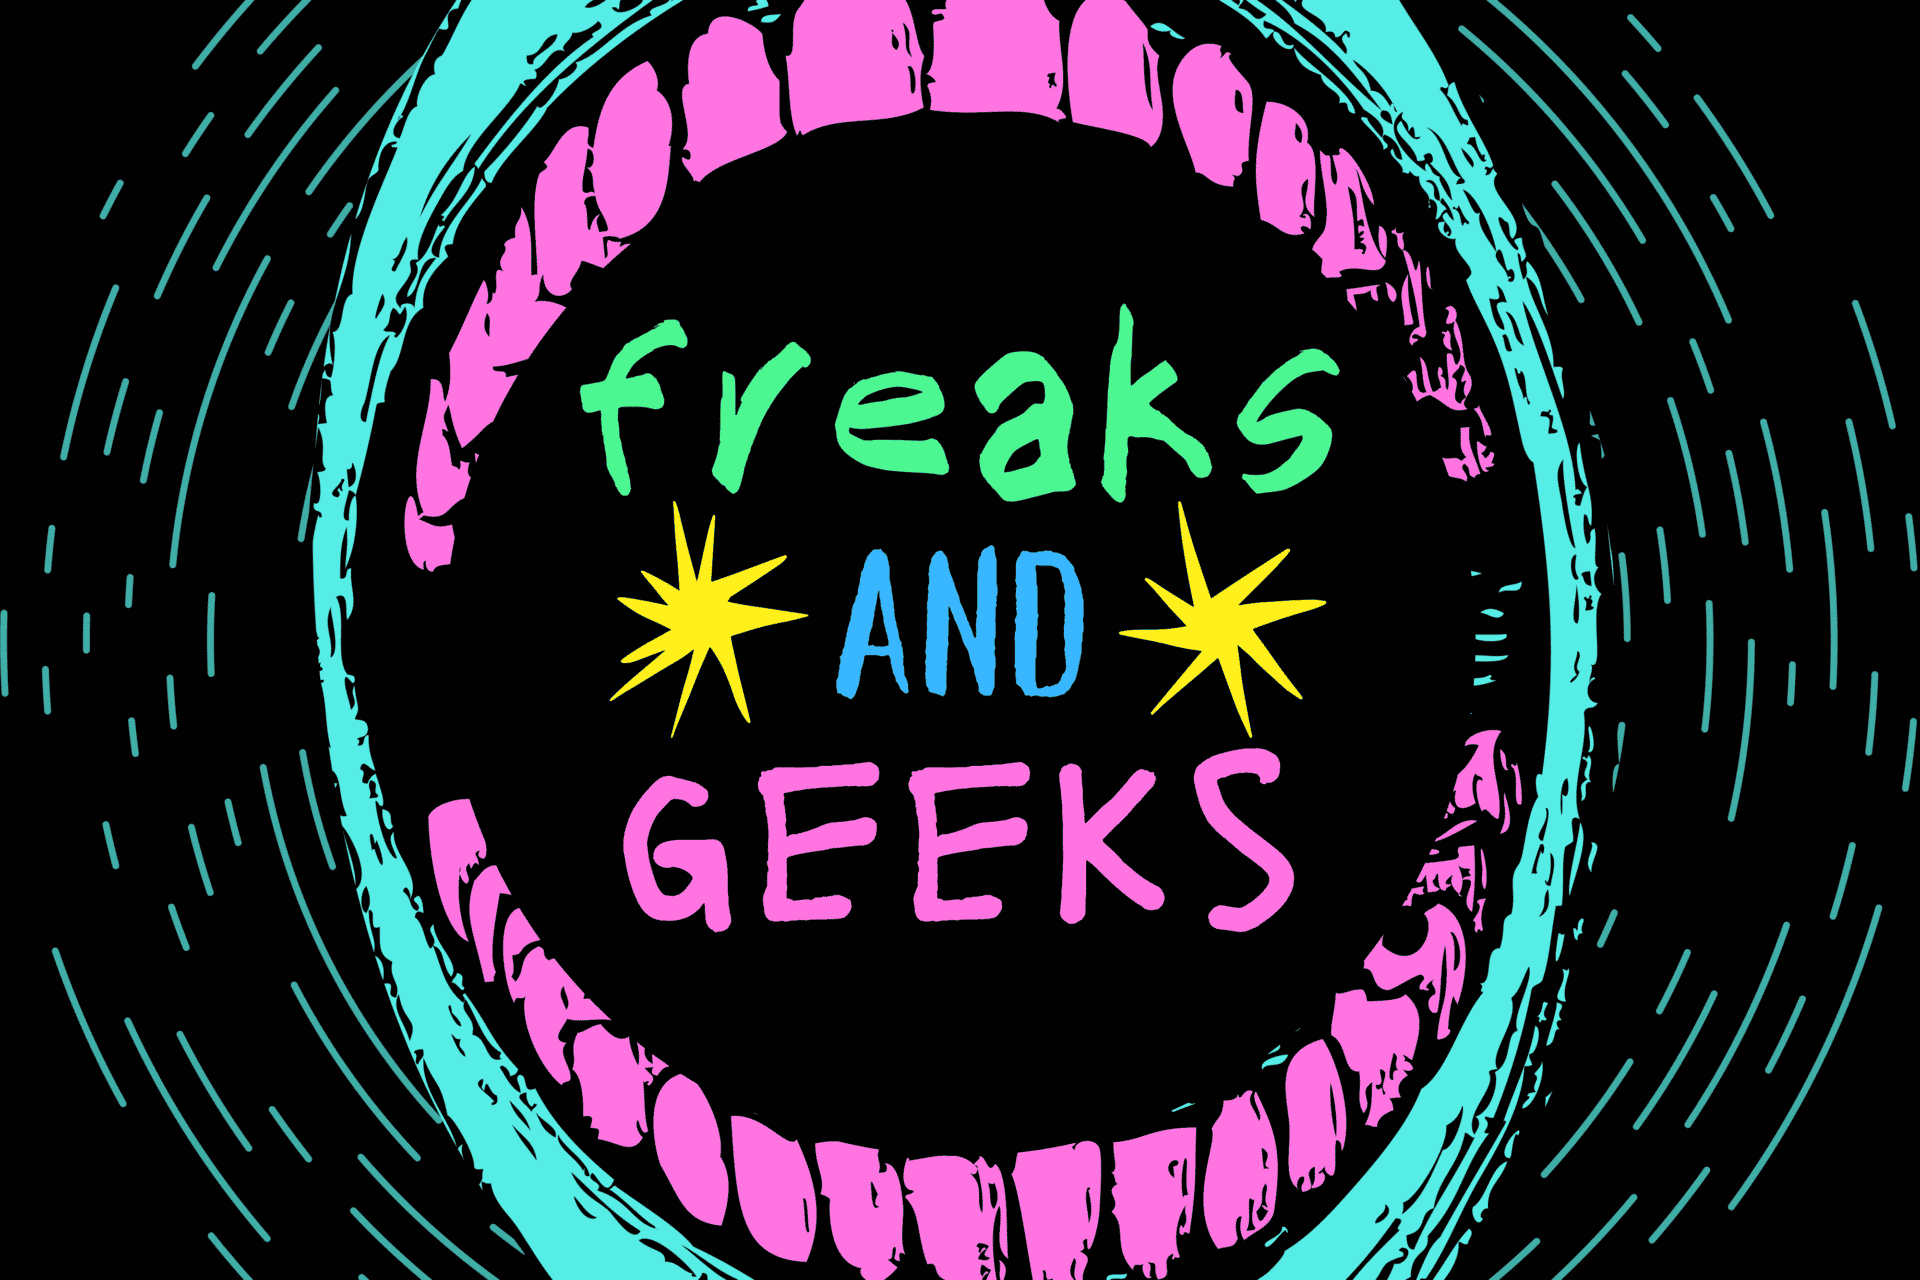 Freaks and geeks logo2